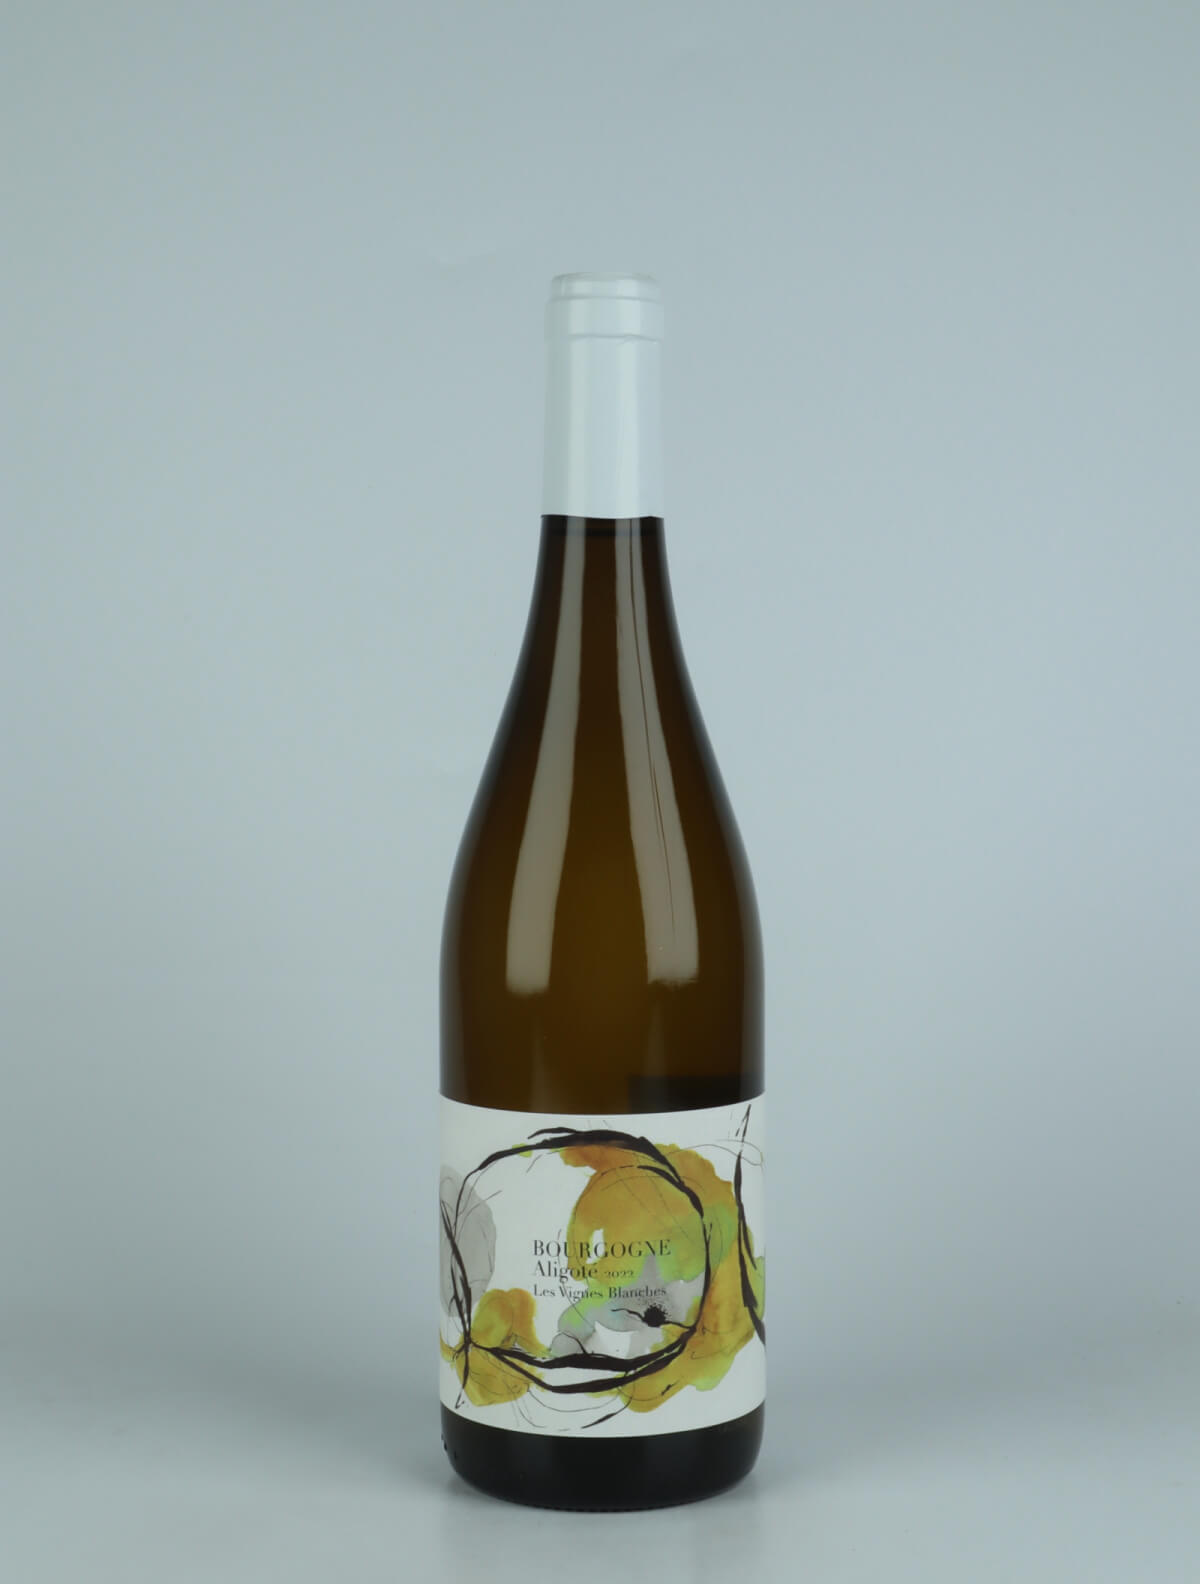 En flaske 2022 Bourgogne Aligoté - Les Vignes Blanches Hvidvin fra Domaine Didon, Bourgogne i Frankrig